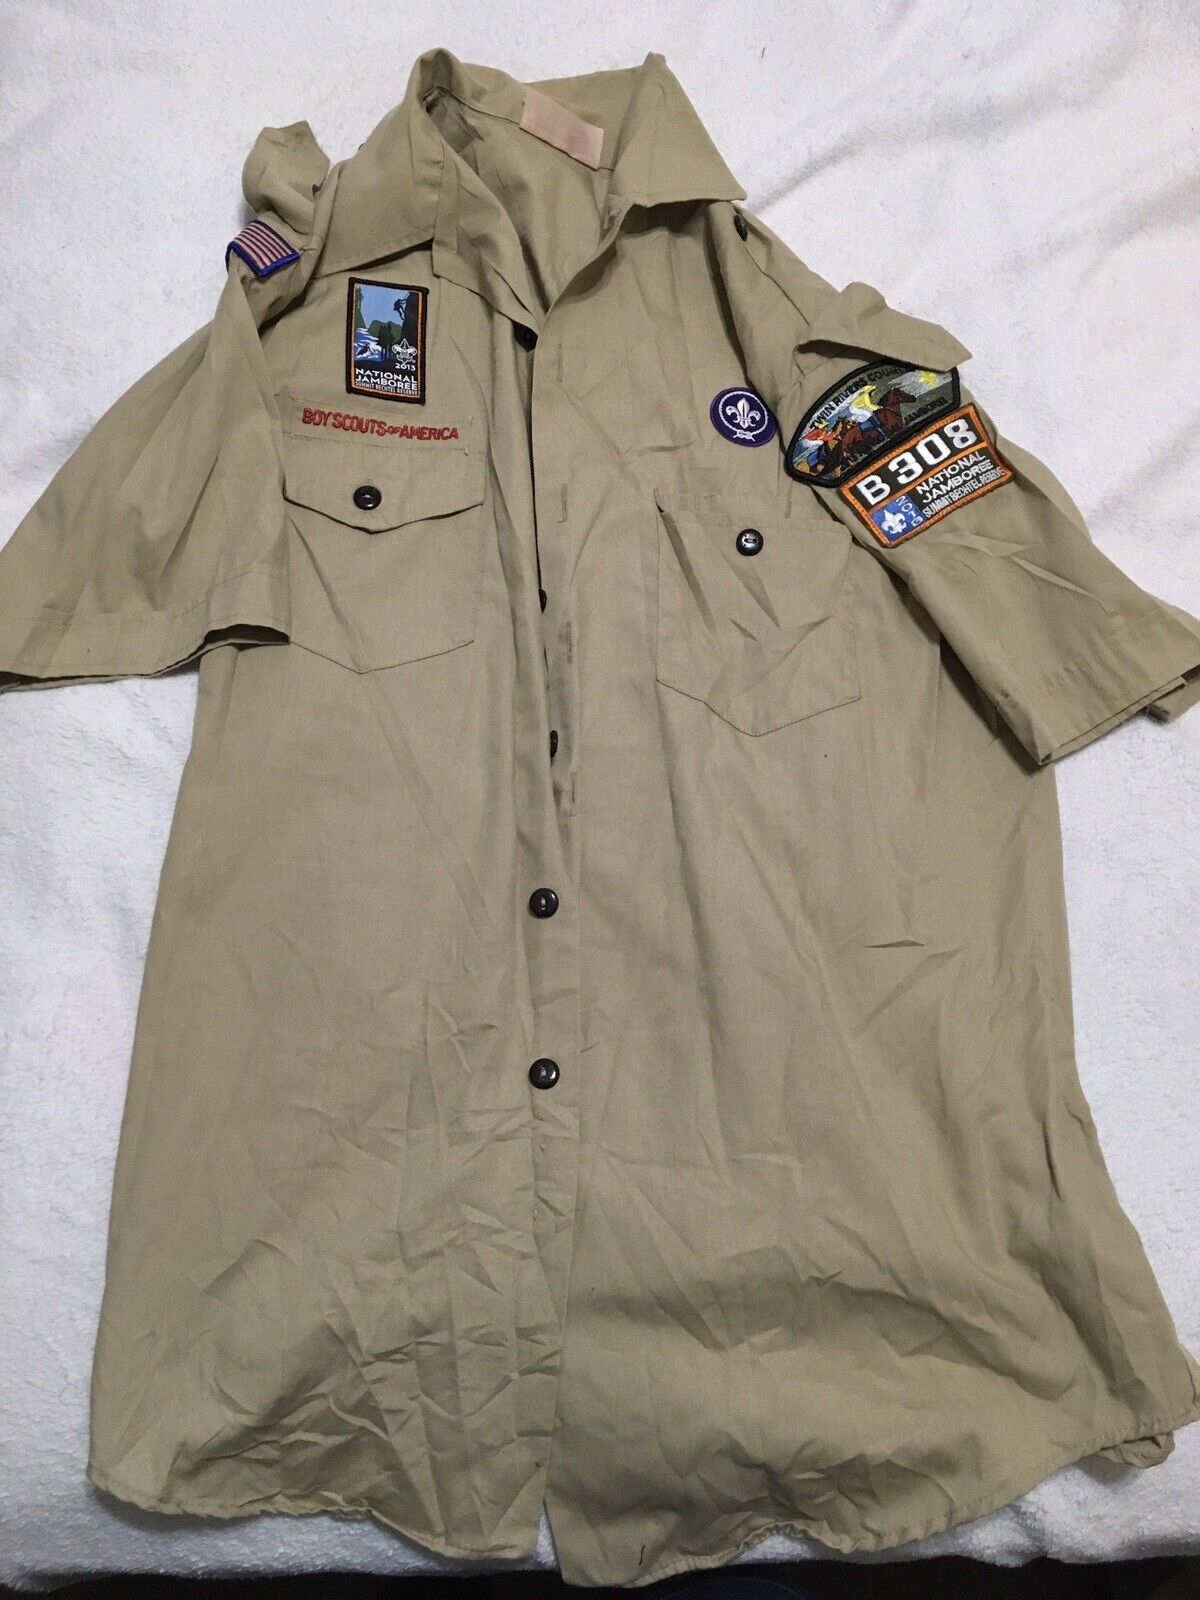 Boy Scout BSA UNIFORM SHIRT Mens Large Short Sleeve Tan